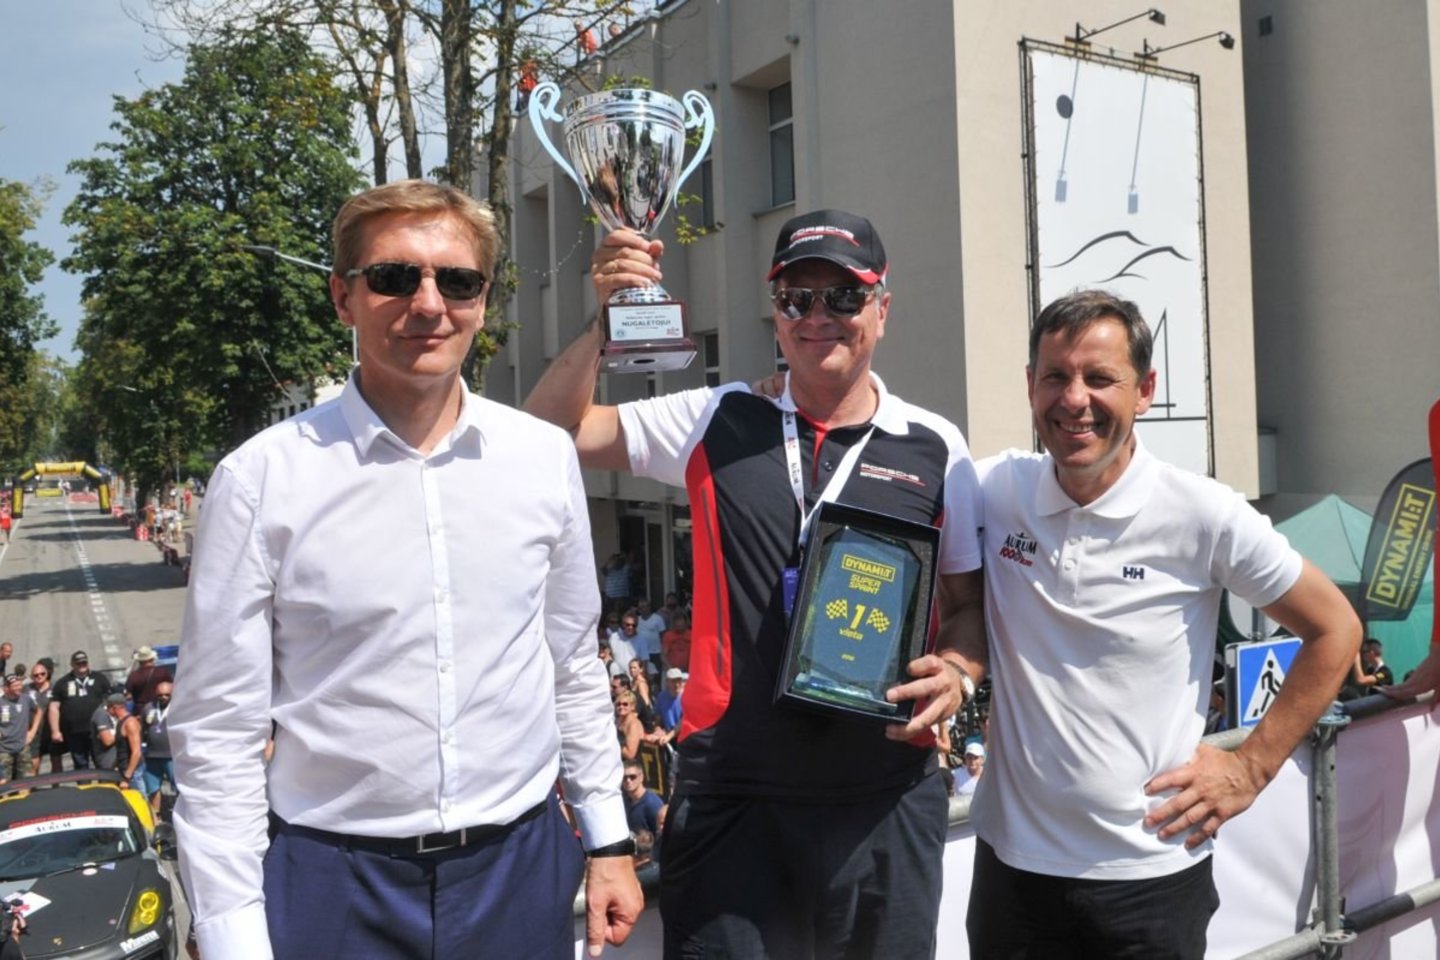  1006 km lenktynėse rekordus gerino ne tik sportininkai.<br> Algimanto Brazaičio ir Vytauto Pilkausko nuotr.